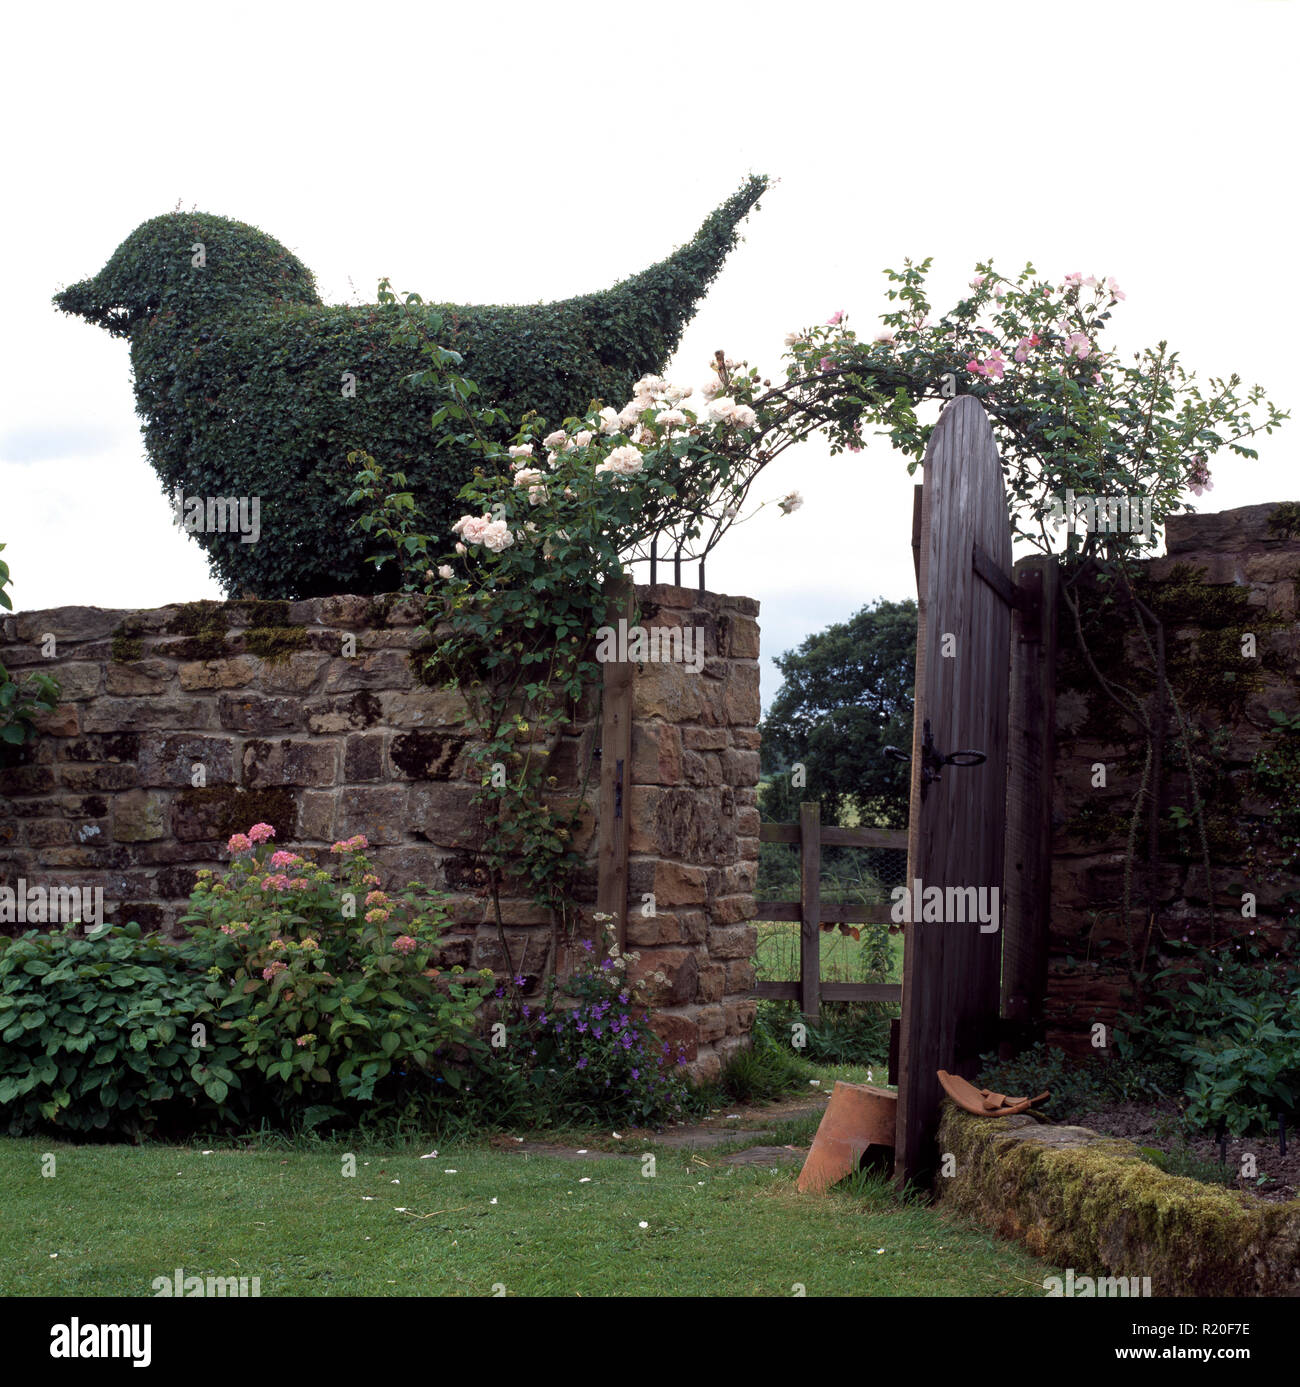 Large topiary bird on garden wall Stock Photo